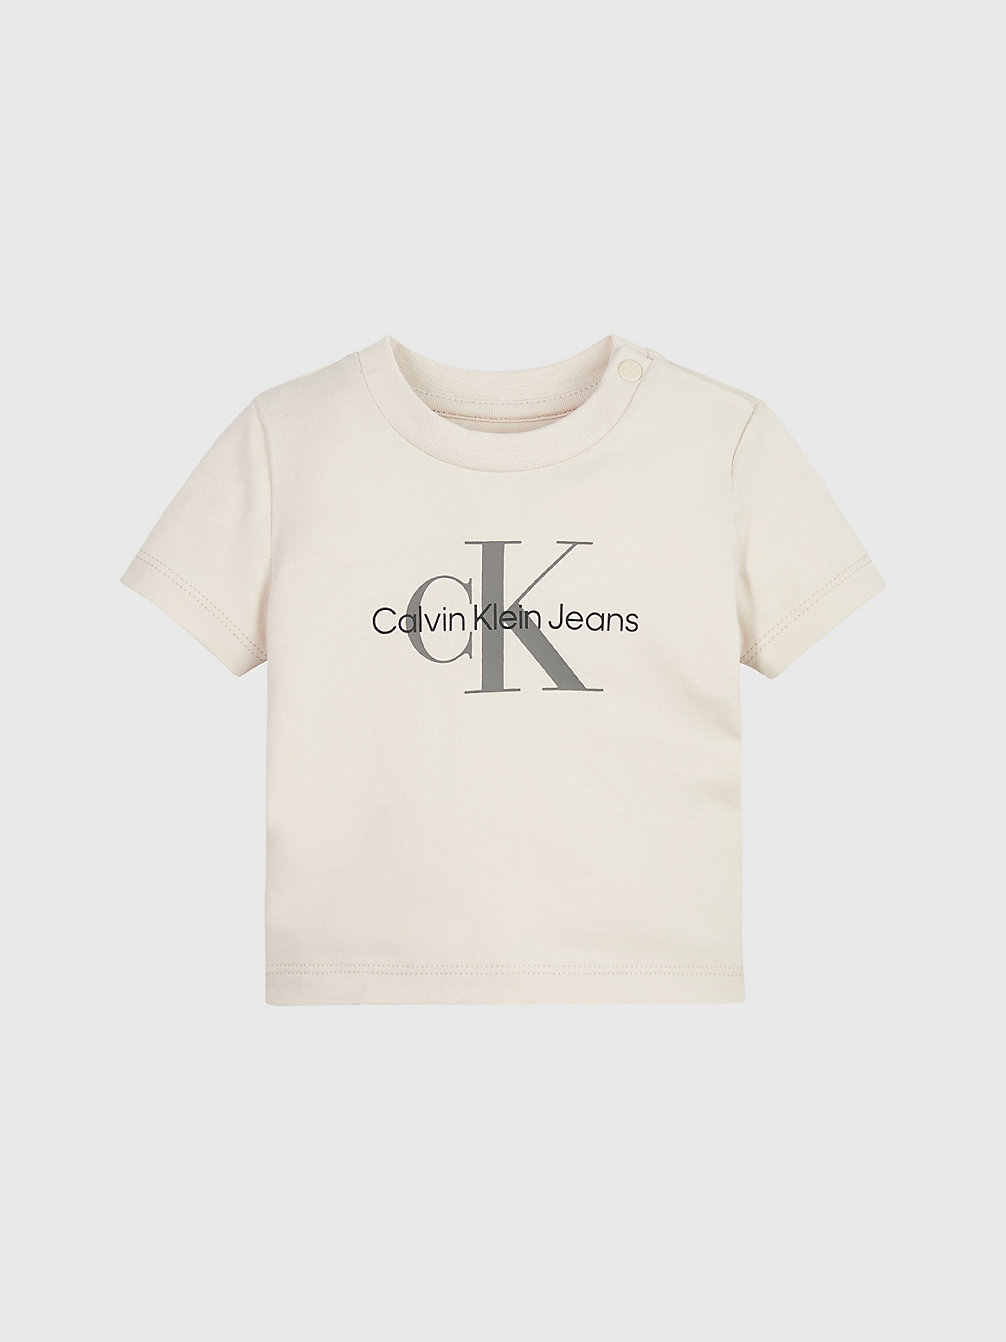 WHITECAP GRAY > T-Shirt Z Logo Z Bawełny Organicznej Dla Noworodka > undefined newborn - Calvin Klein